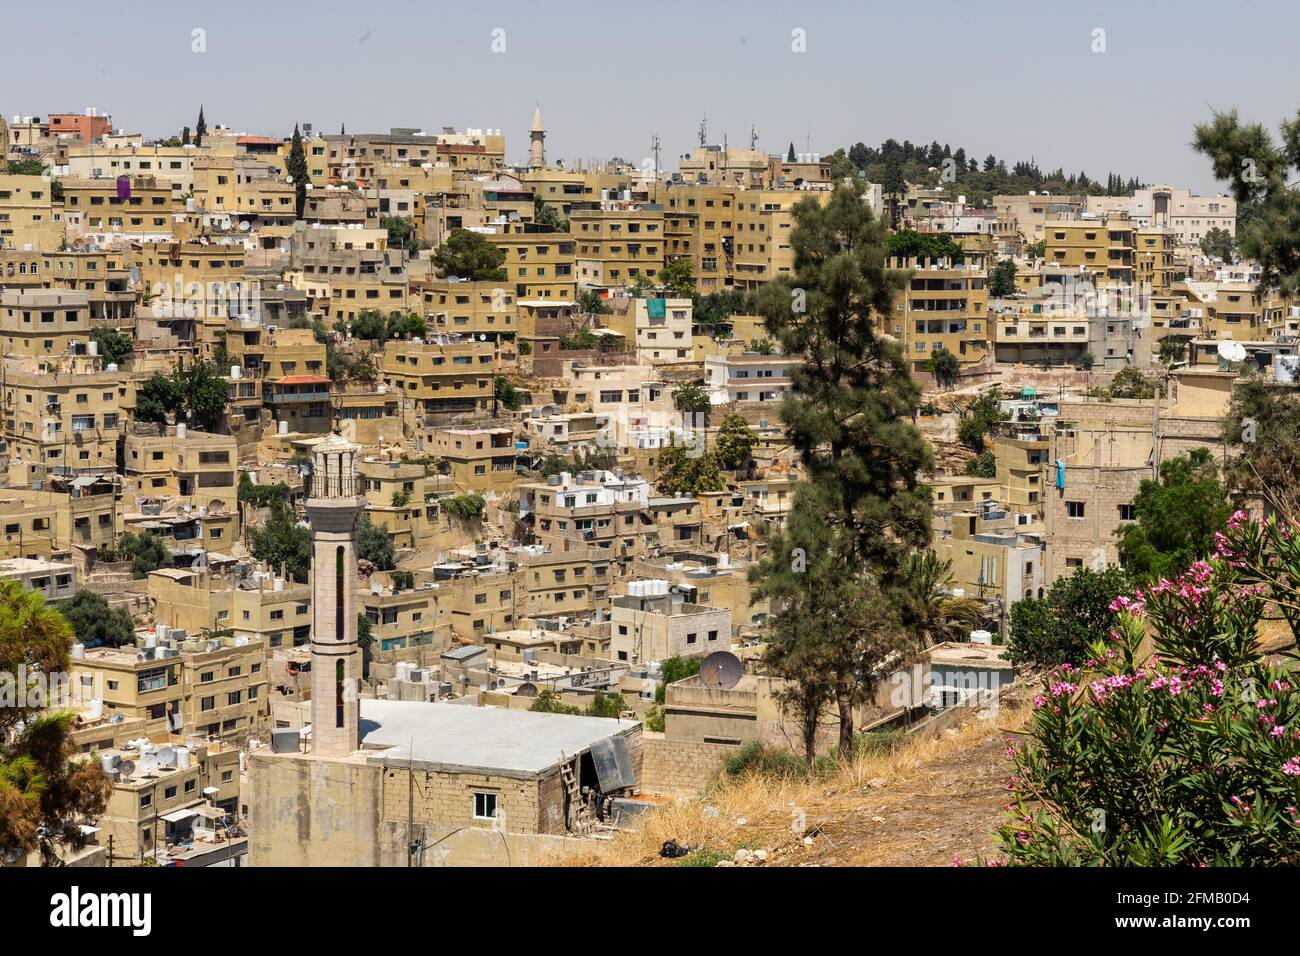 Vue imprenable sur la vieille ville d'Amman, en Jordanie, avec des immeubles résidentiels de faible hauteur et une ancienne mosquée Banque D'Images